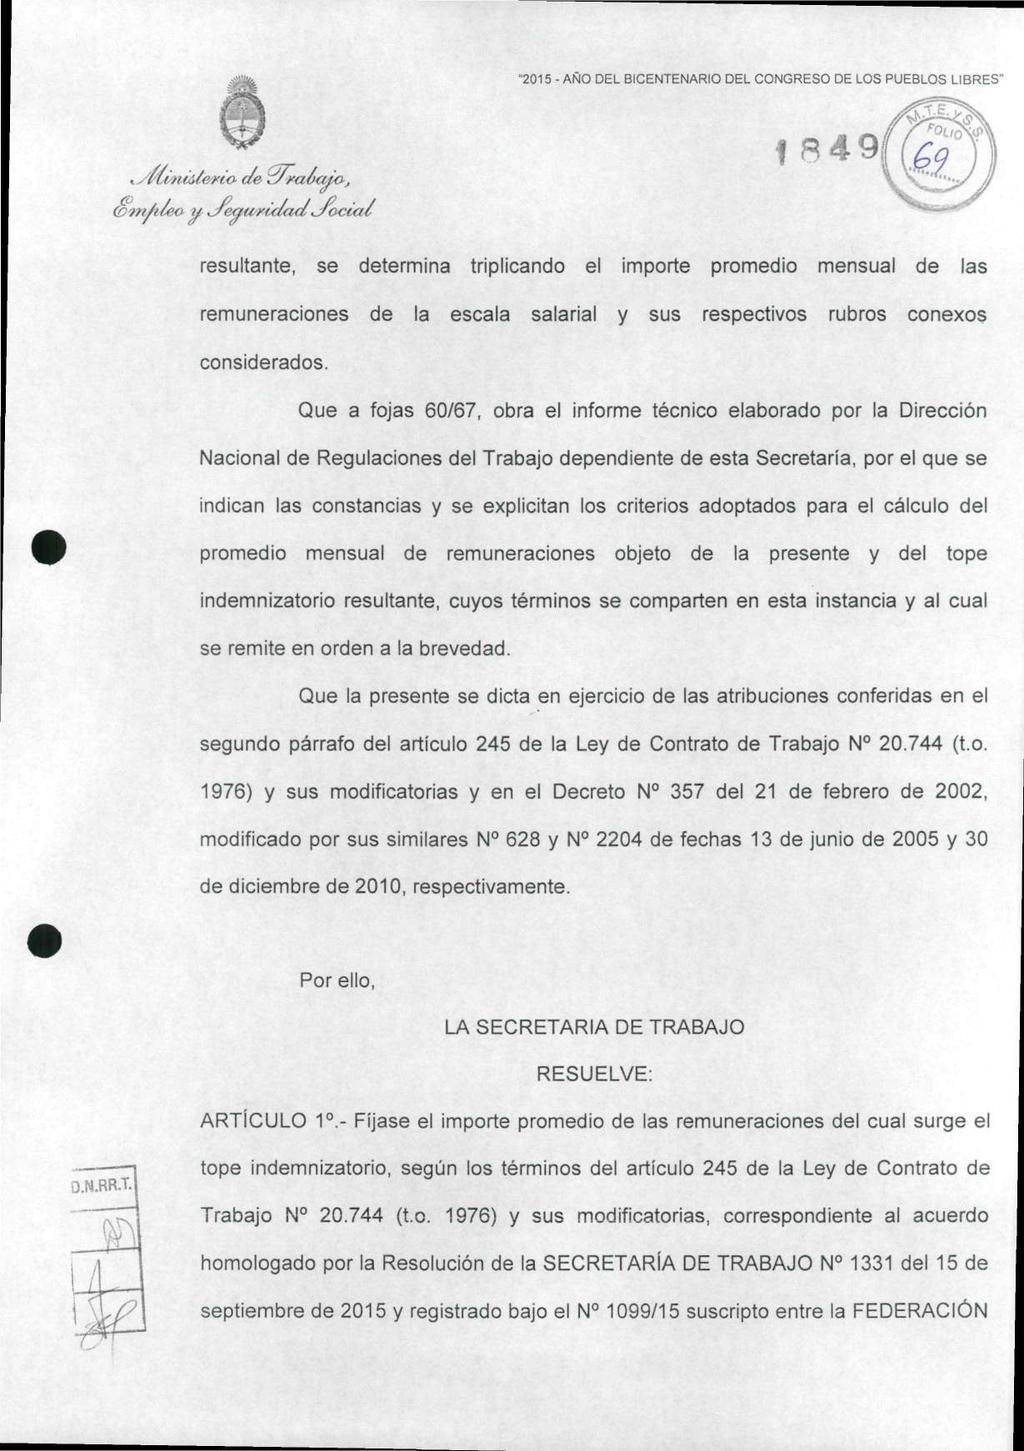 "2015 - ANO DEL BICENTENARIO DEL CONGRESO DE LOS PUEBLOS LIBRES" Kyitm.